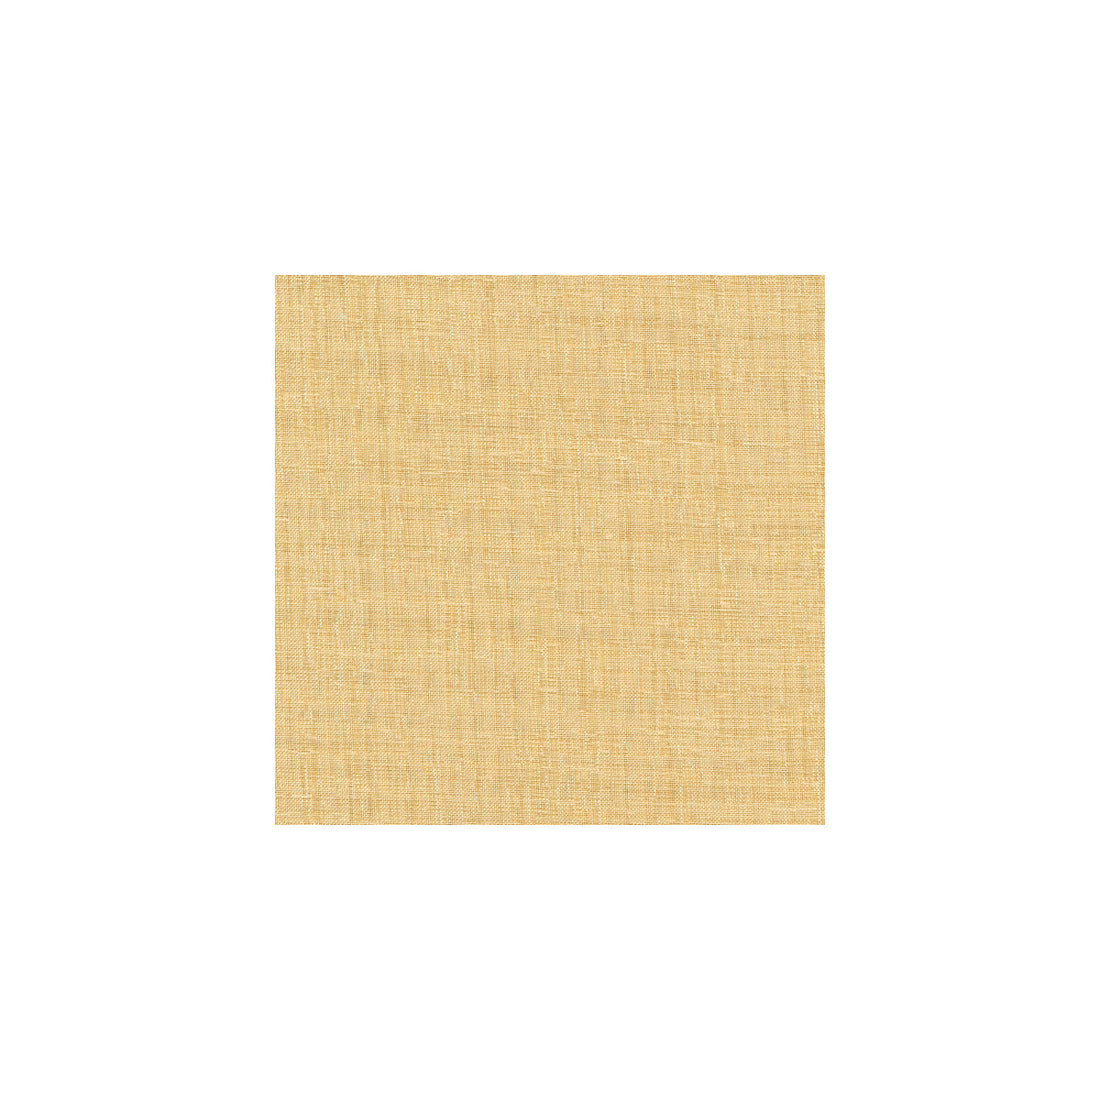 Kravet Basics fabric in 8656-116 color - pattern 8656.116.0 - by Kravet Basics